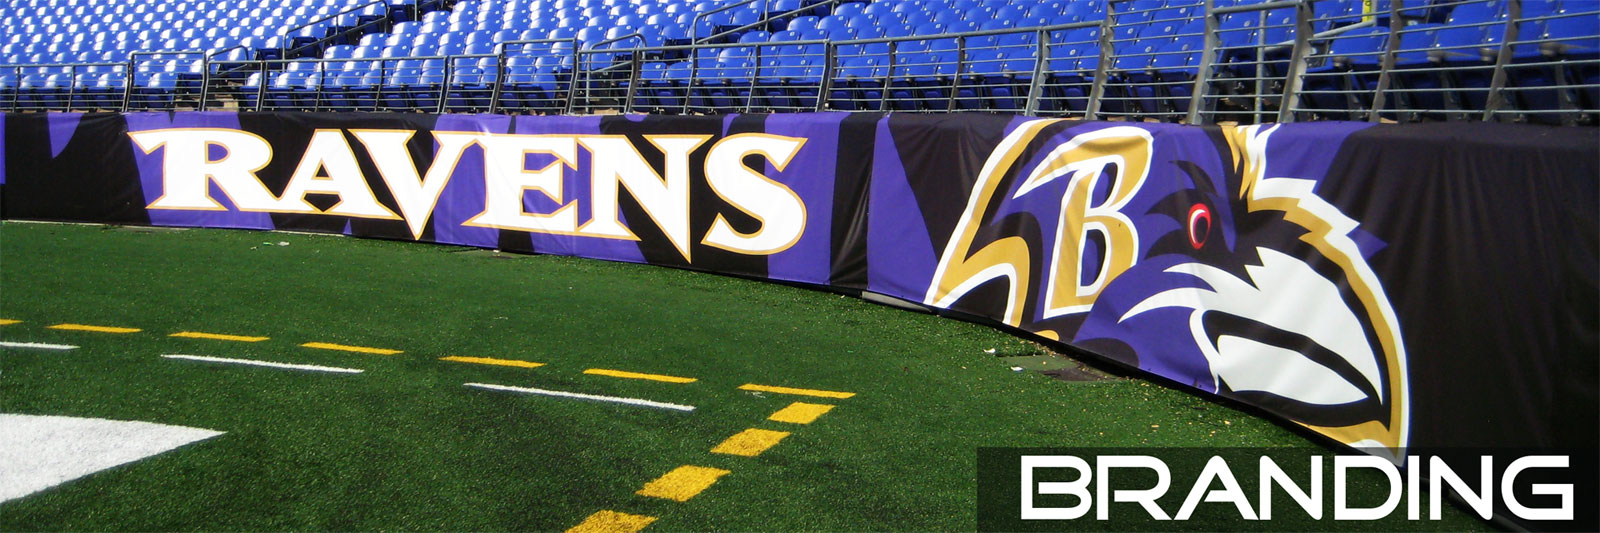 Baltimore Ravens Branding Banner